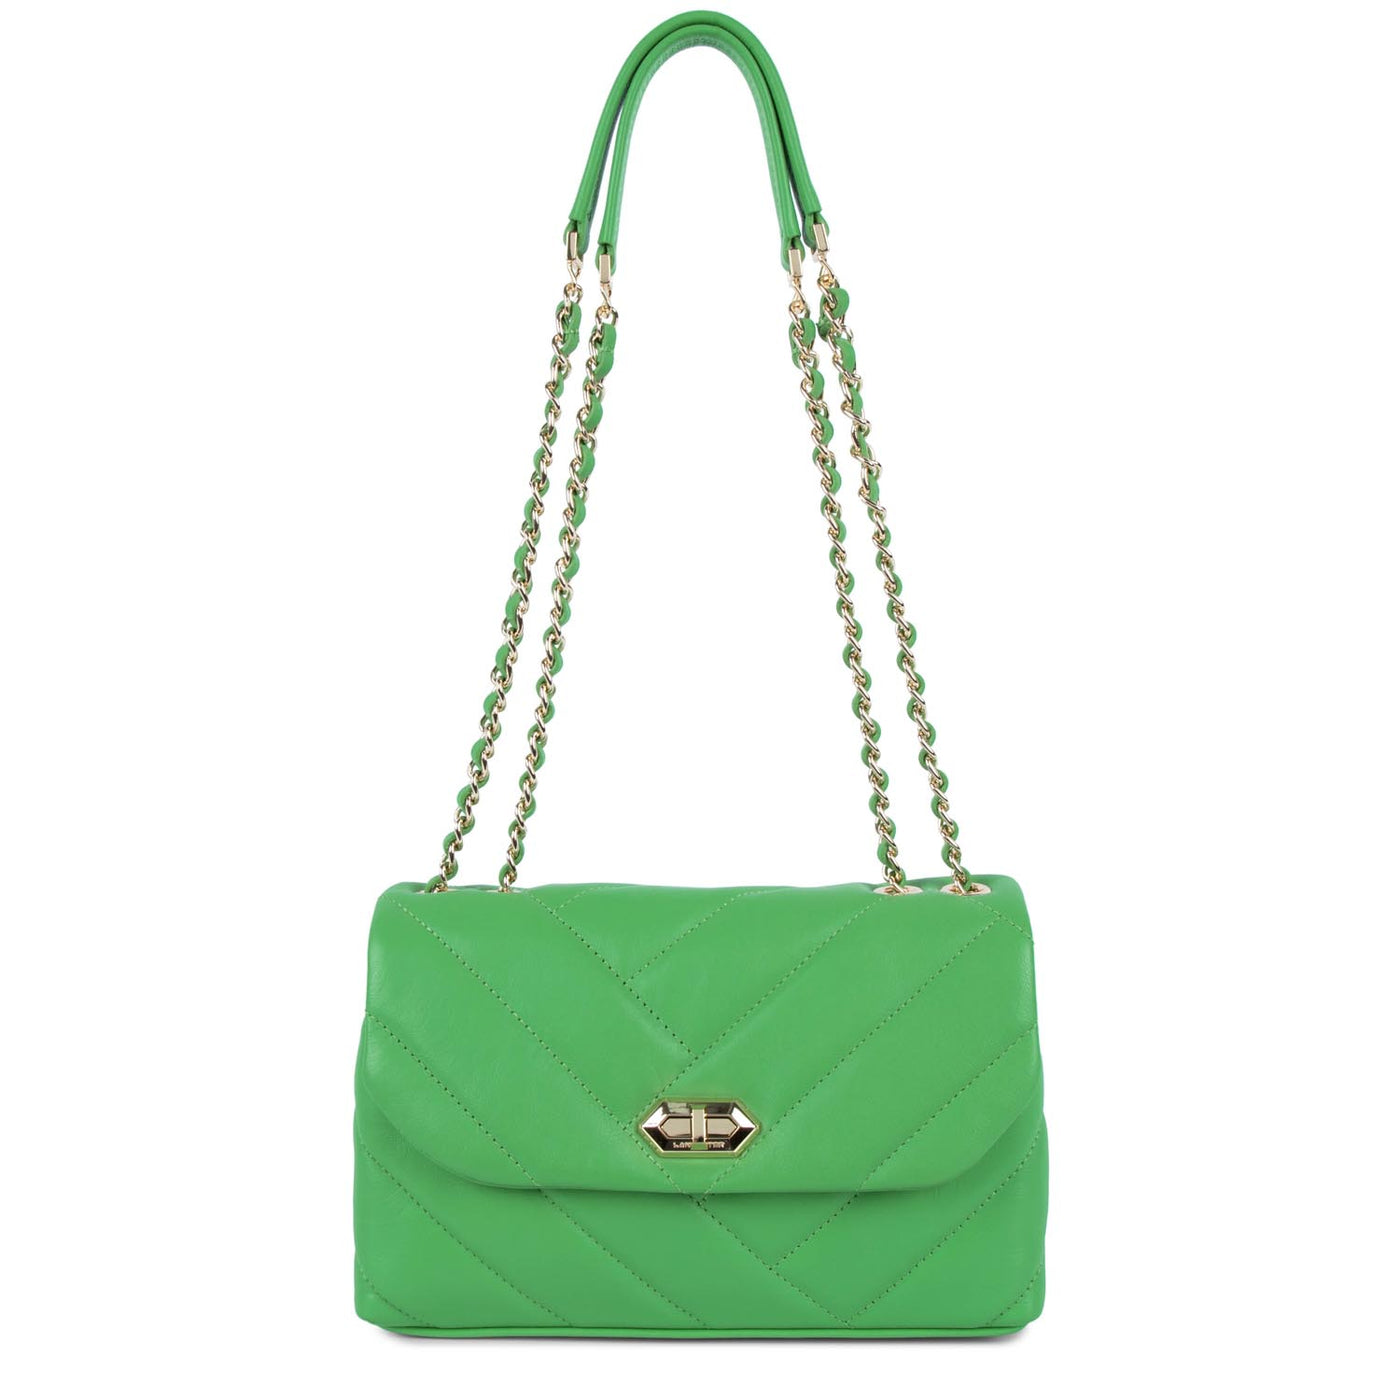 m crossbody bag - soft matelassé #couleur_vert-colo